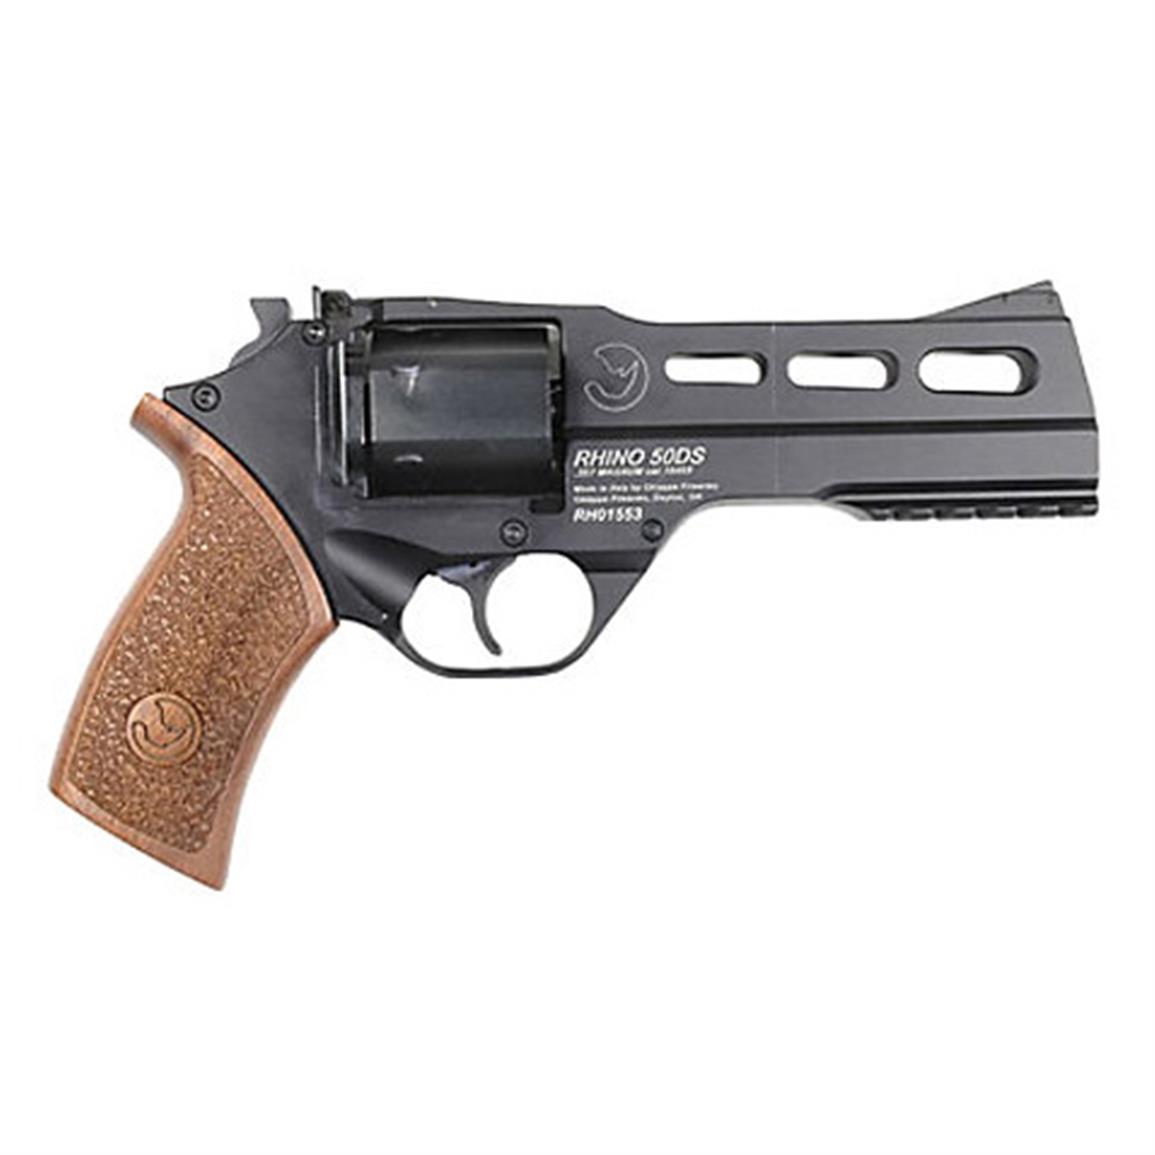 Chiappa White Rhino Snub Nose Revolver 357 Magnum Whrhino357200ds 60255